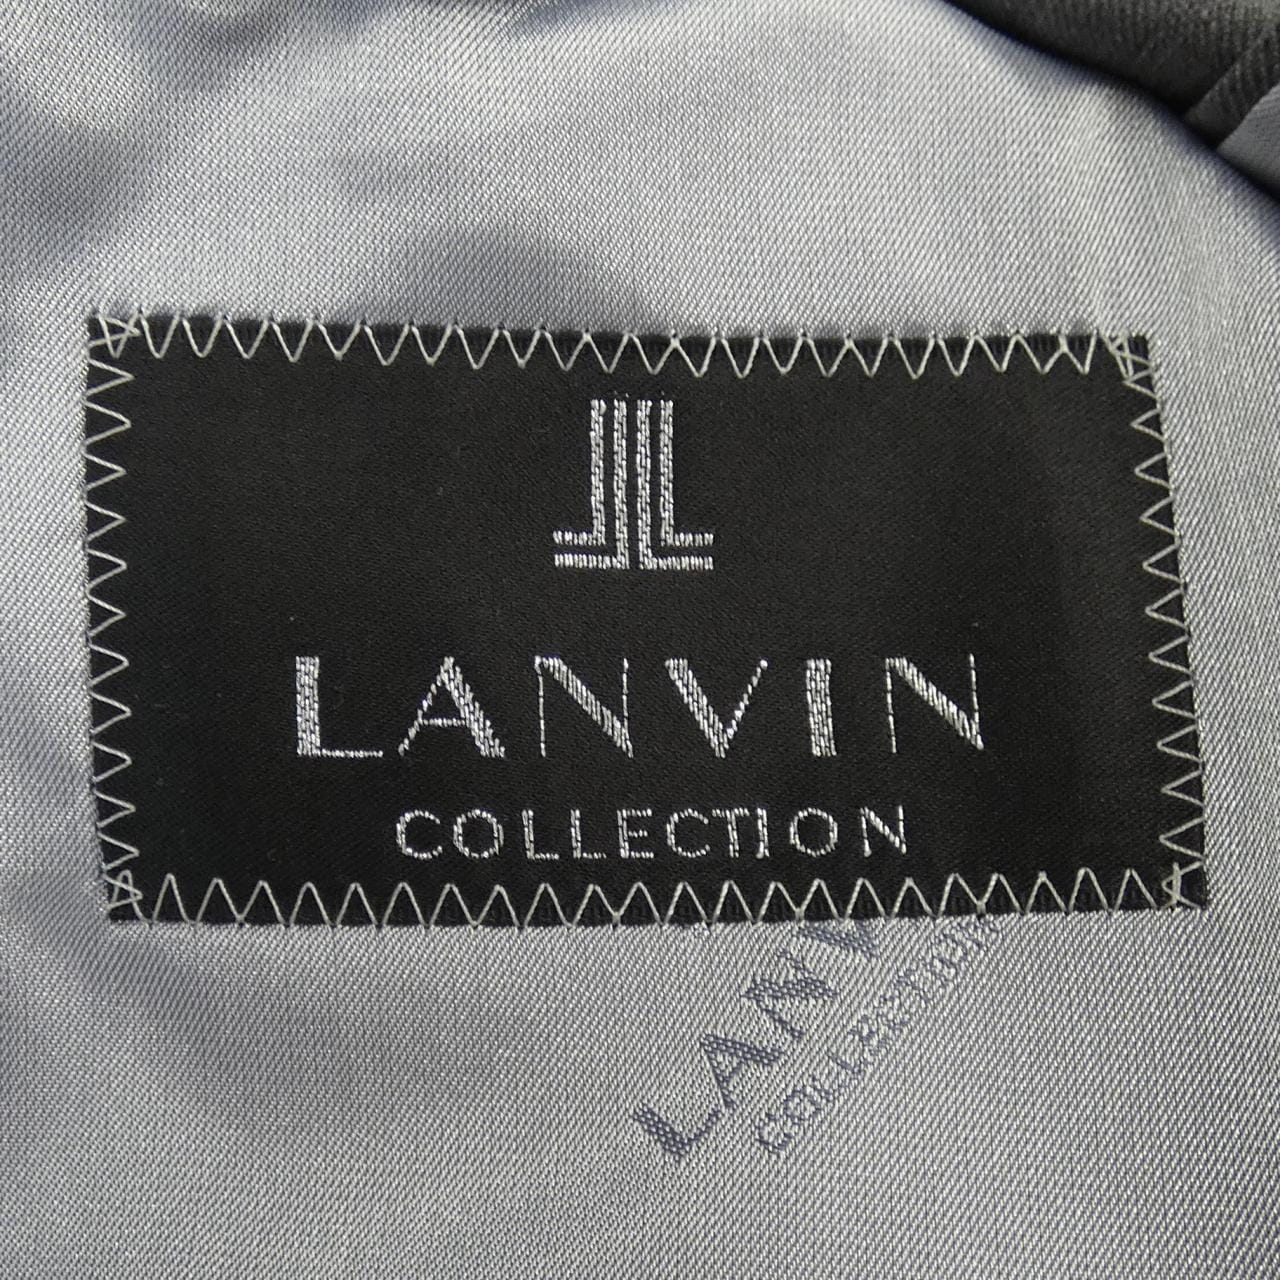 ランバンコレクション LANVIN COLLECTION スーツ